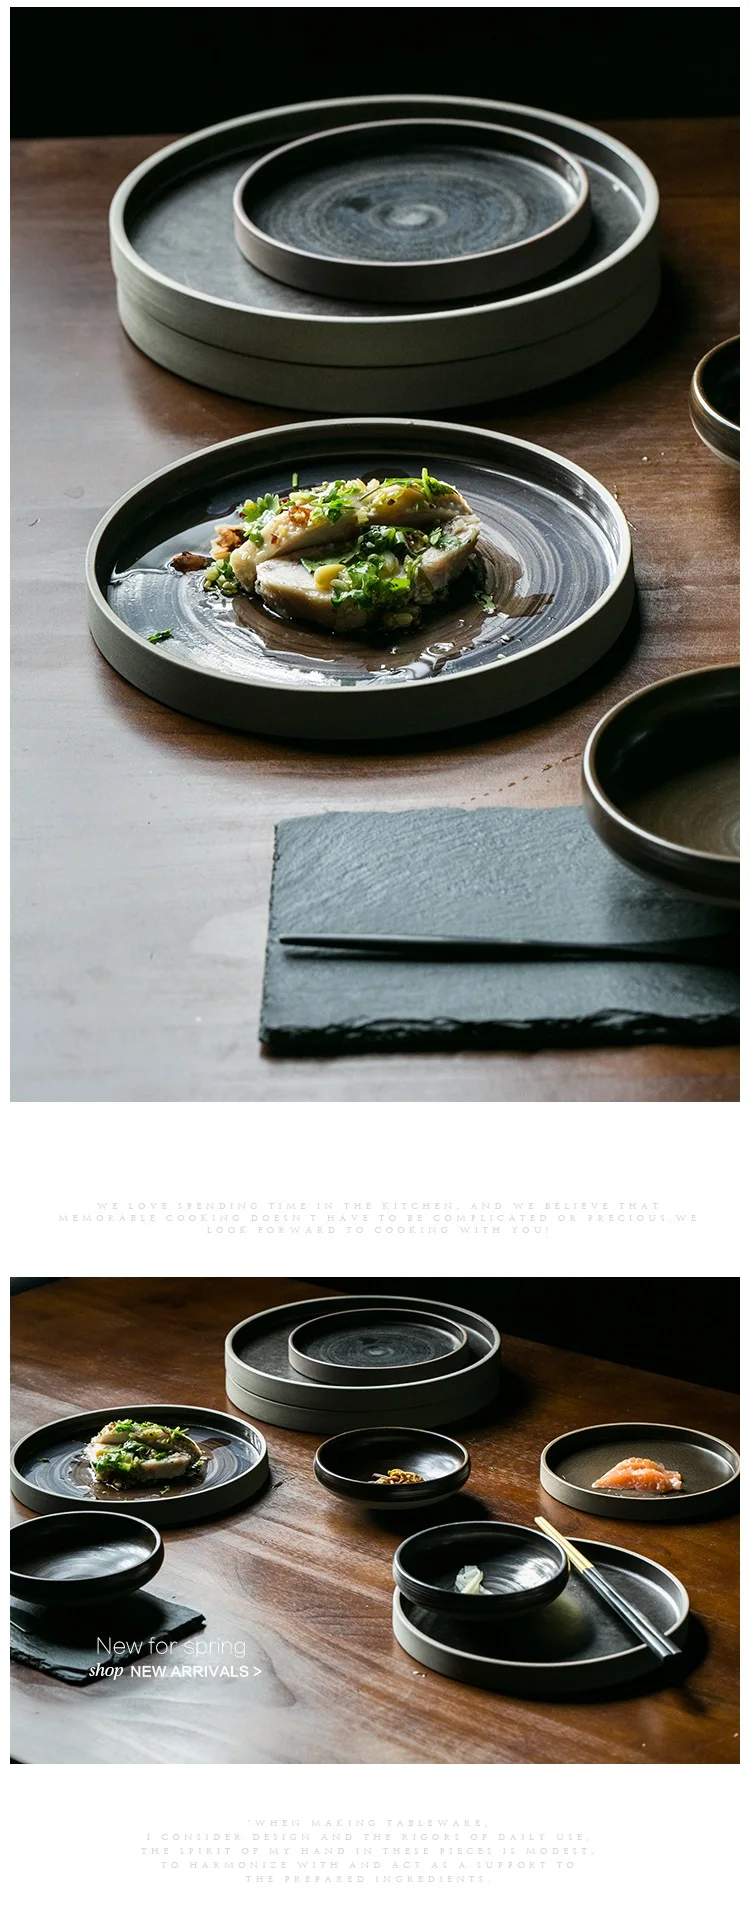 ANTOWALL Европейский стиль коричневый керамический плоский поднос обеденная тарелка Ретро миска для рисового супа круглая тарелка блюдо кружка